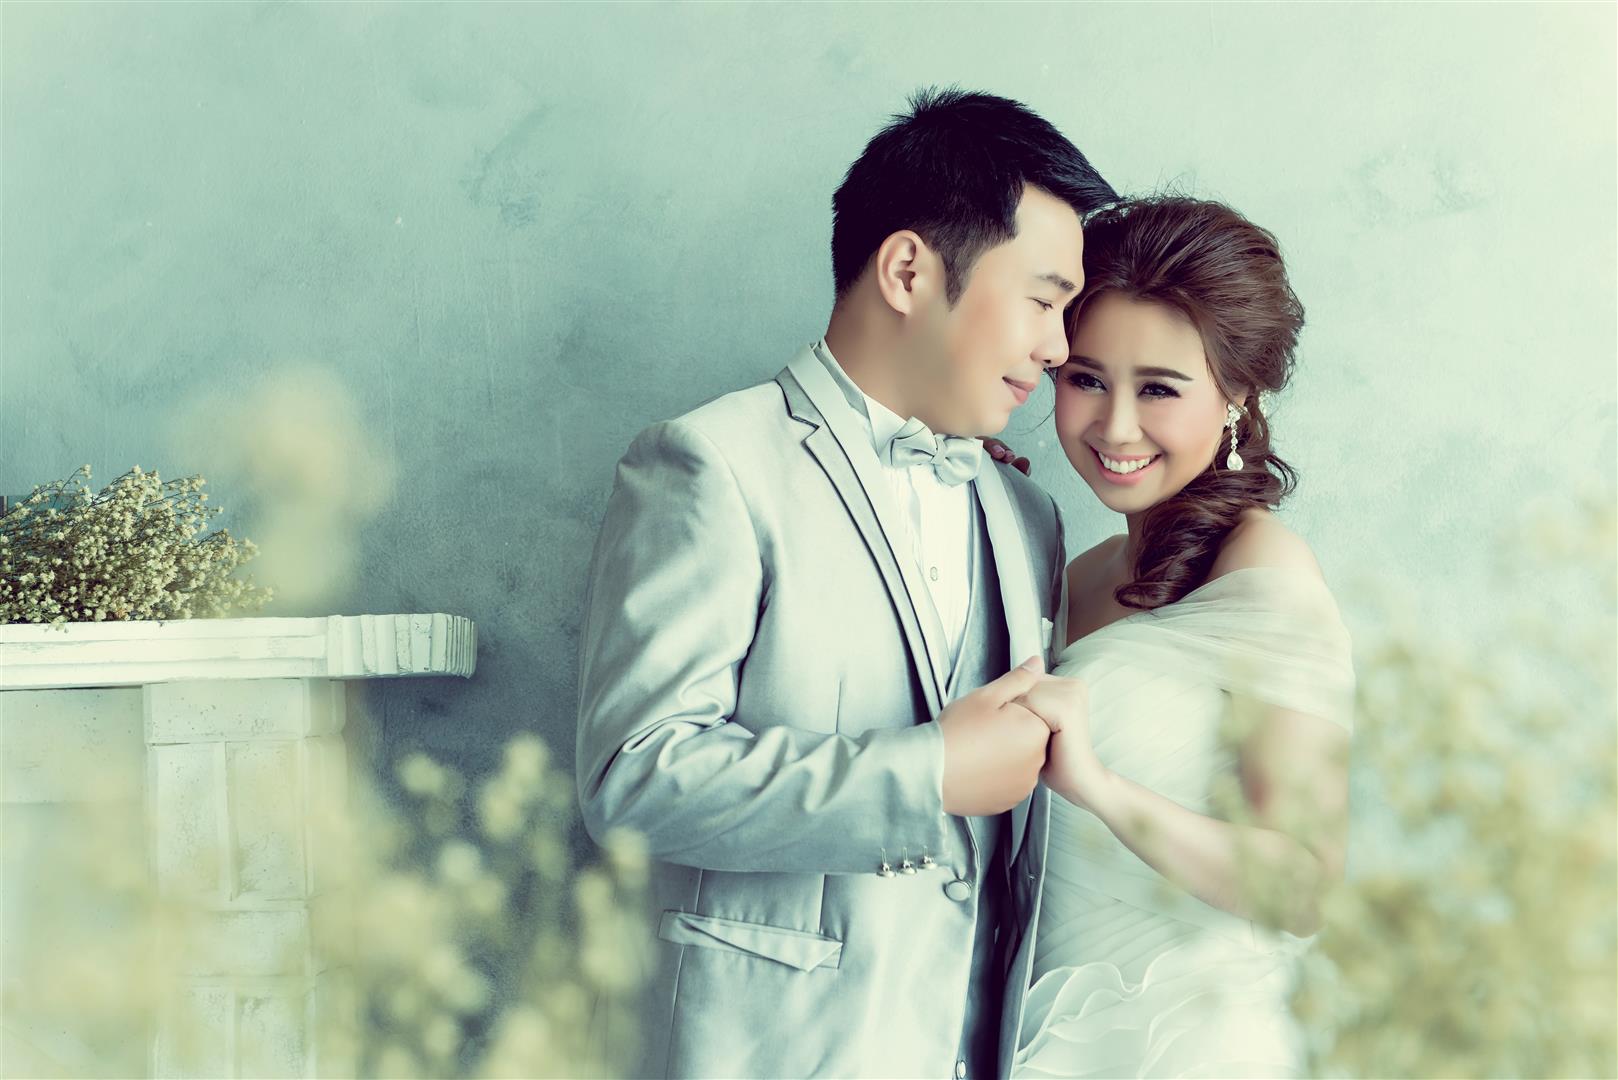 ถ่ายรูปแต่งงาน ชุดไทย ชุดเจ้าสาว เช่าชุดแต่งงาน ถ่ายรูปแต่งงานราคาถูก ถ่ายภาพ แต่งงาน ถ่ายรูป แต่งงาน